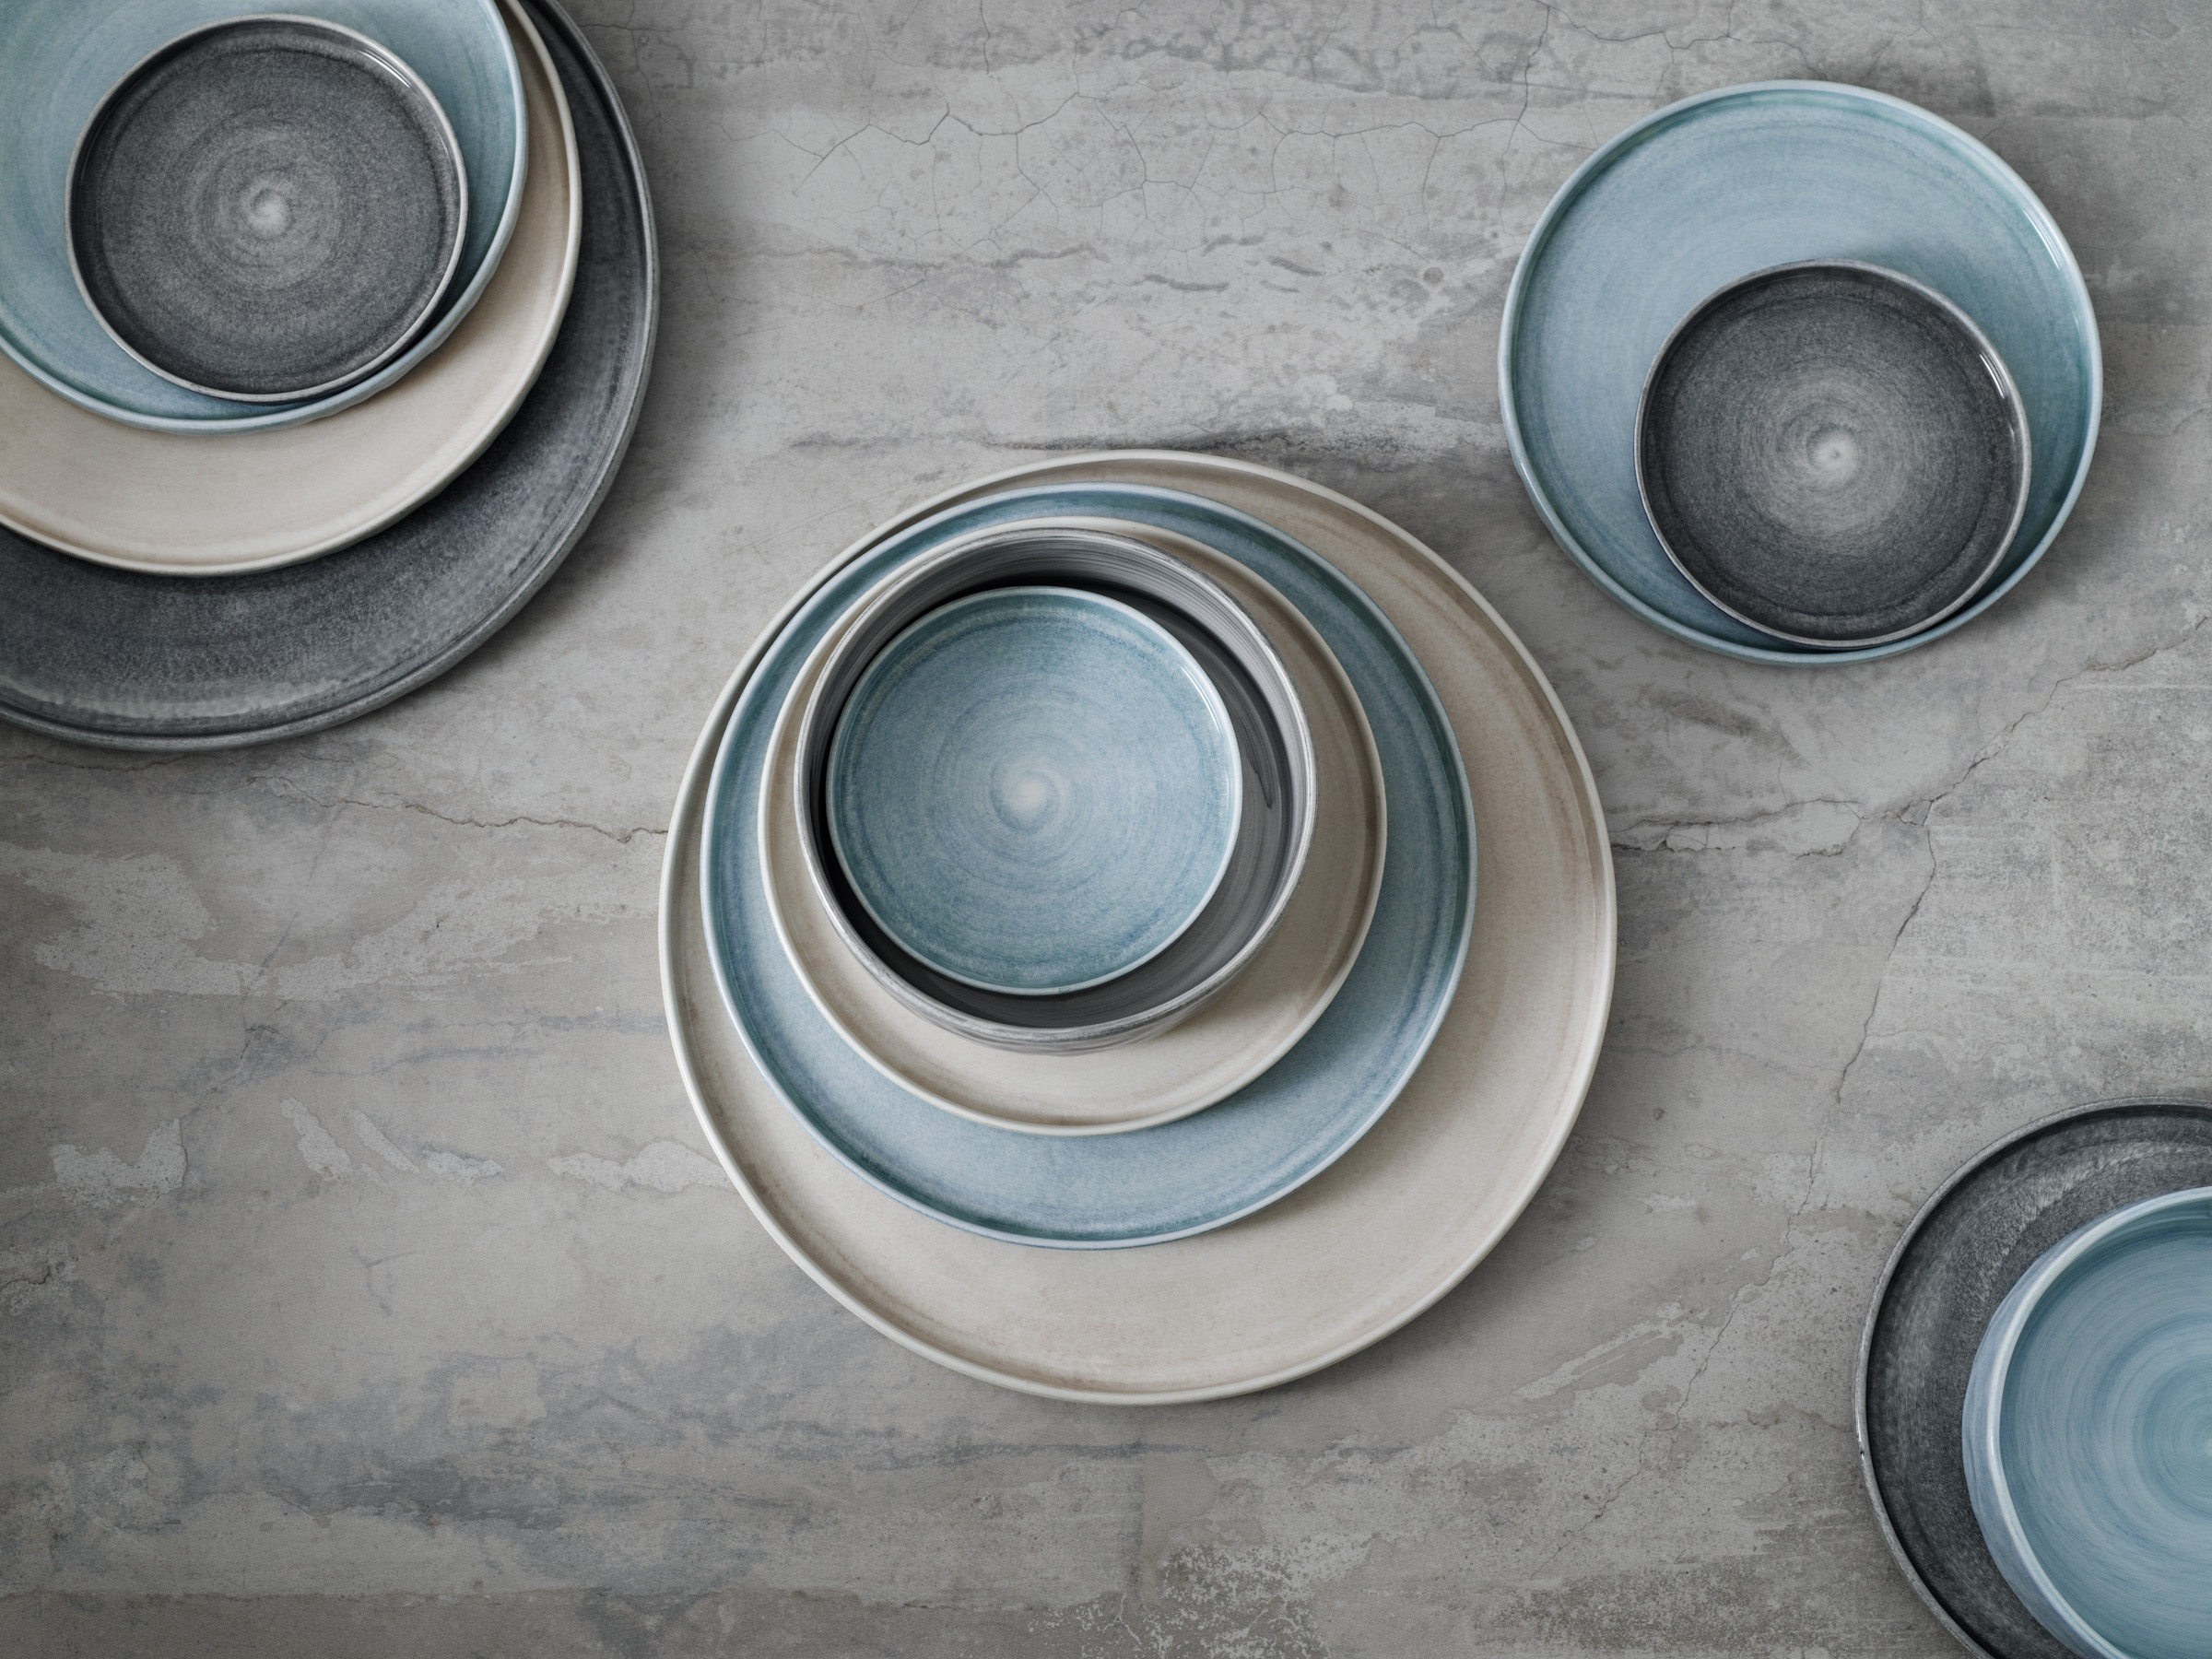 piatti e tazze in ceramica, azienda svedese Mateus